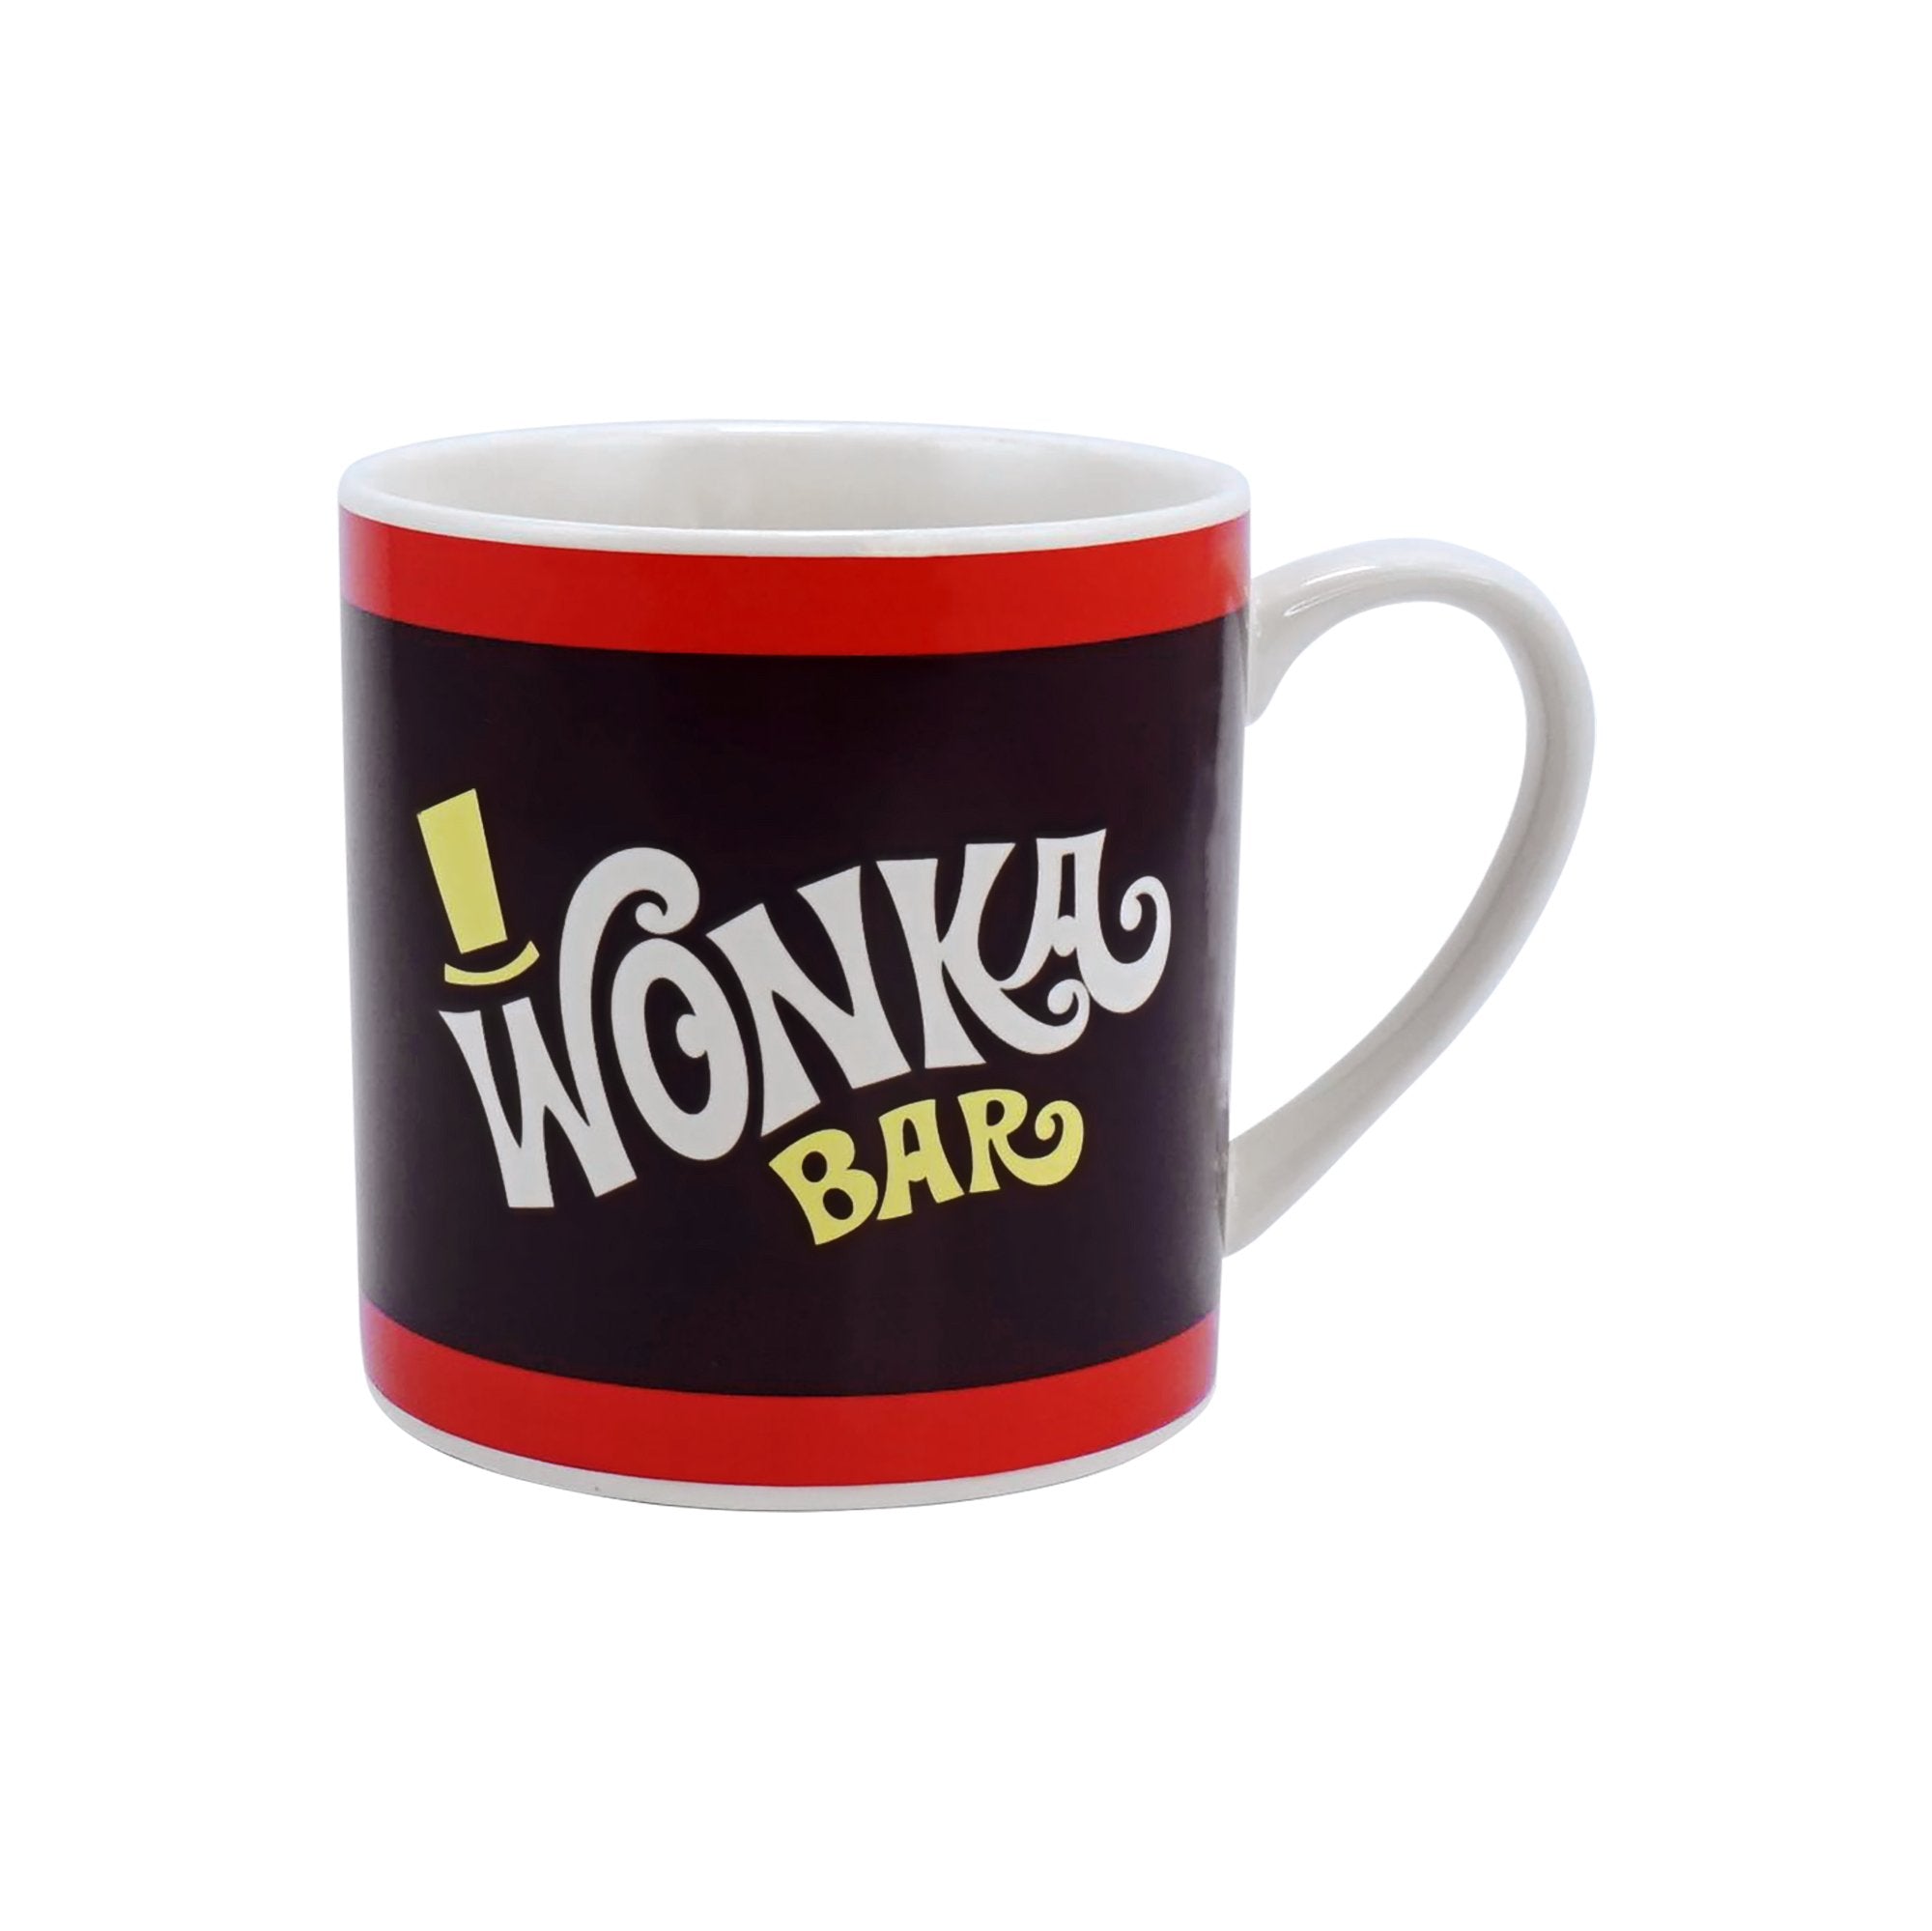 Mug Classic Unboxed (310ml) - Wonka